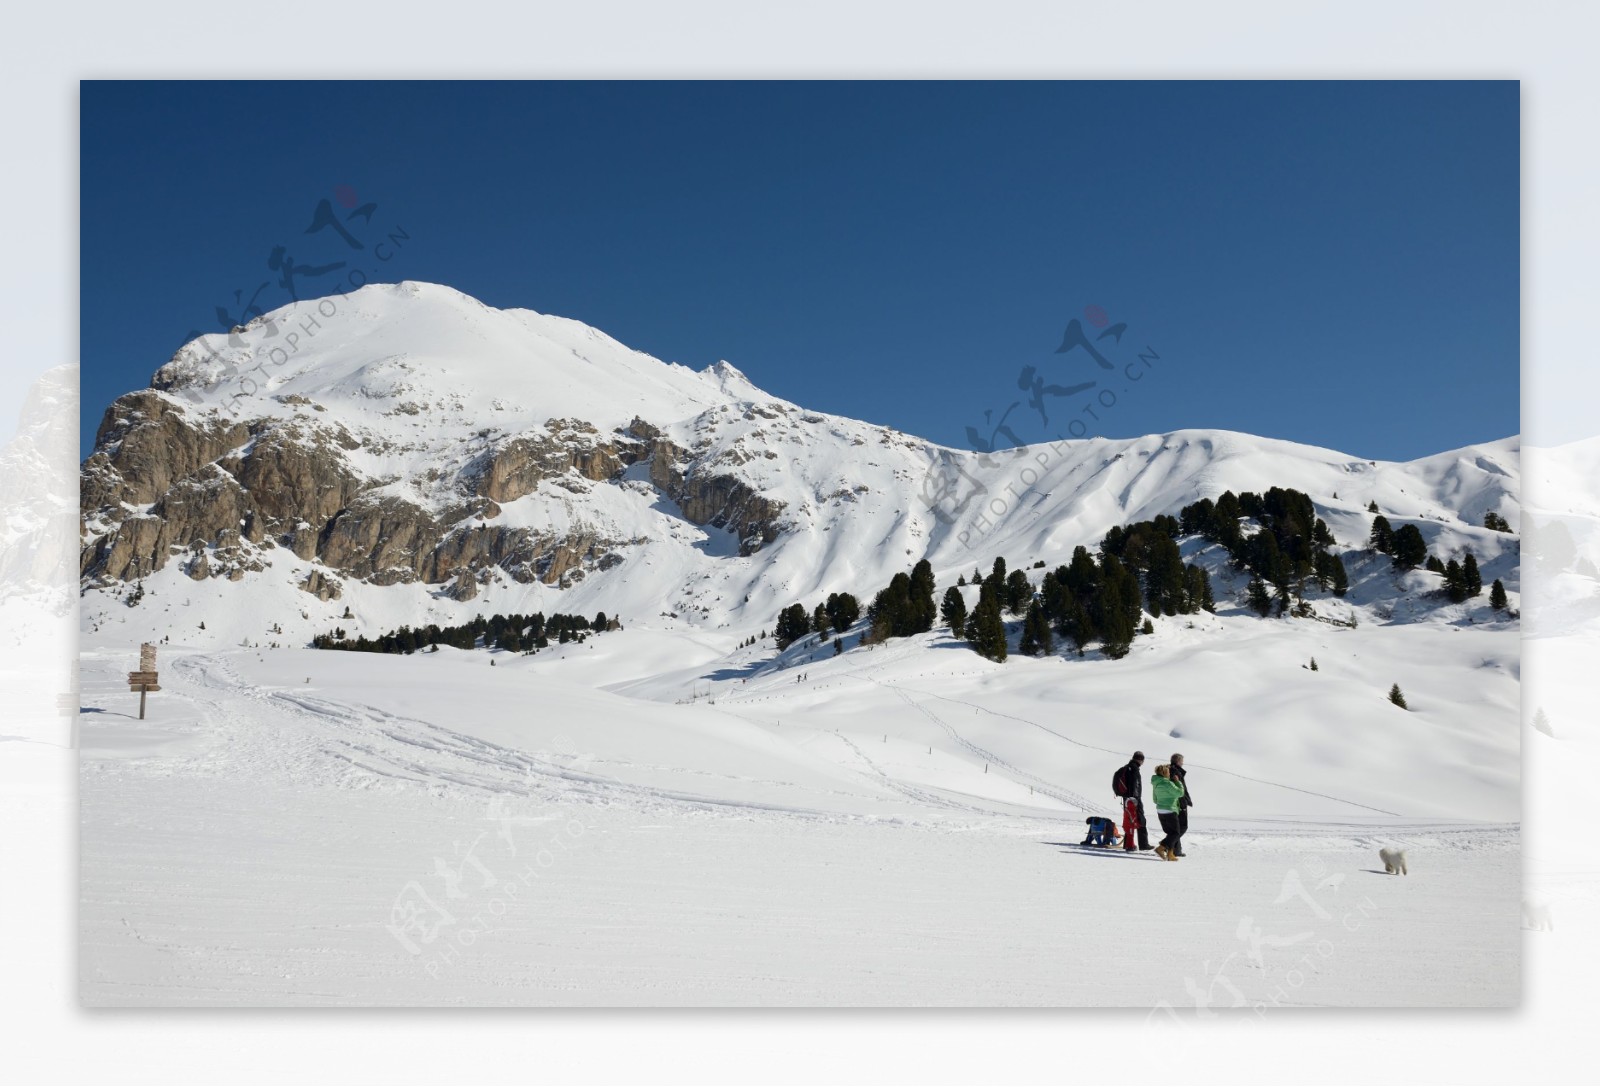 高山滑雪图片